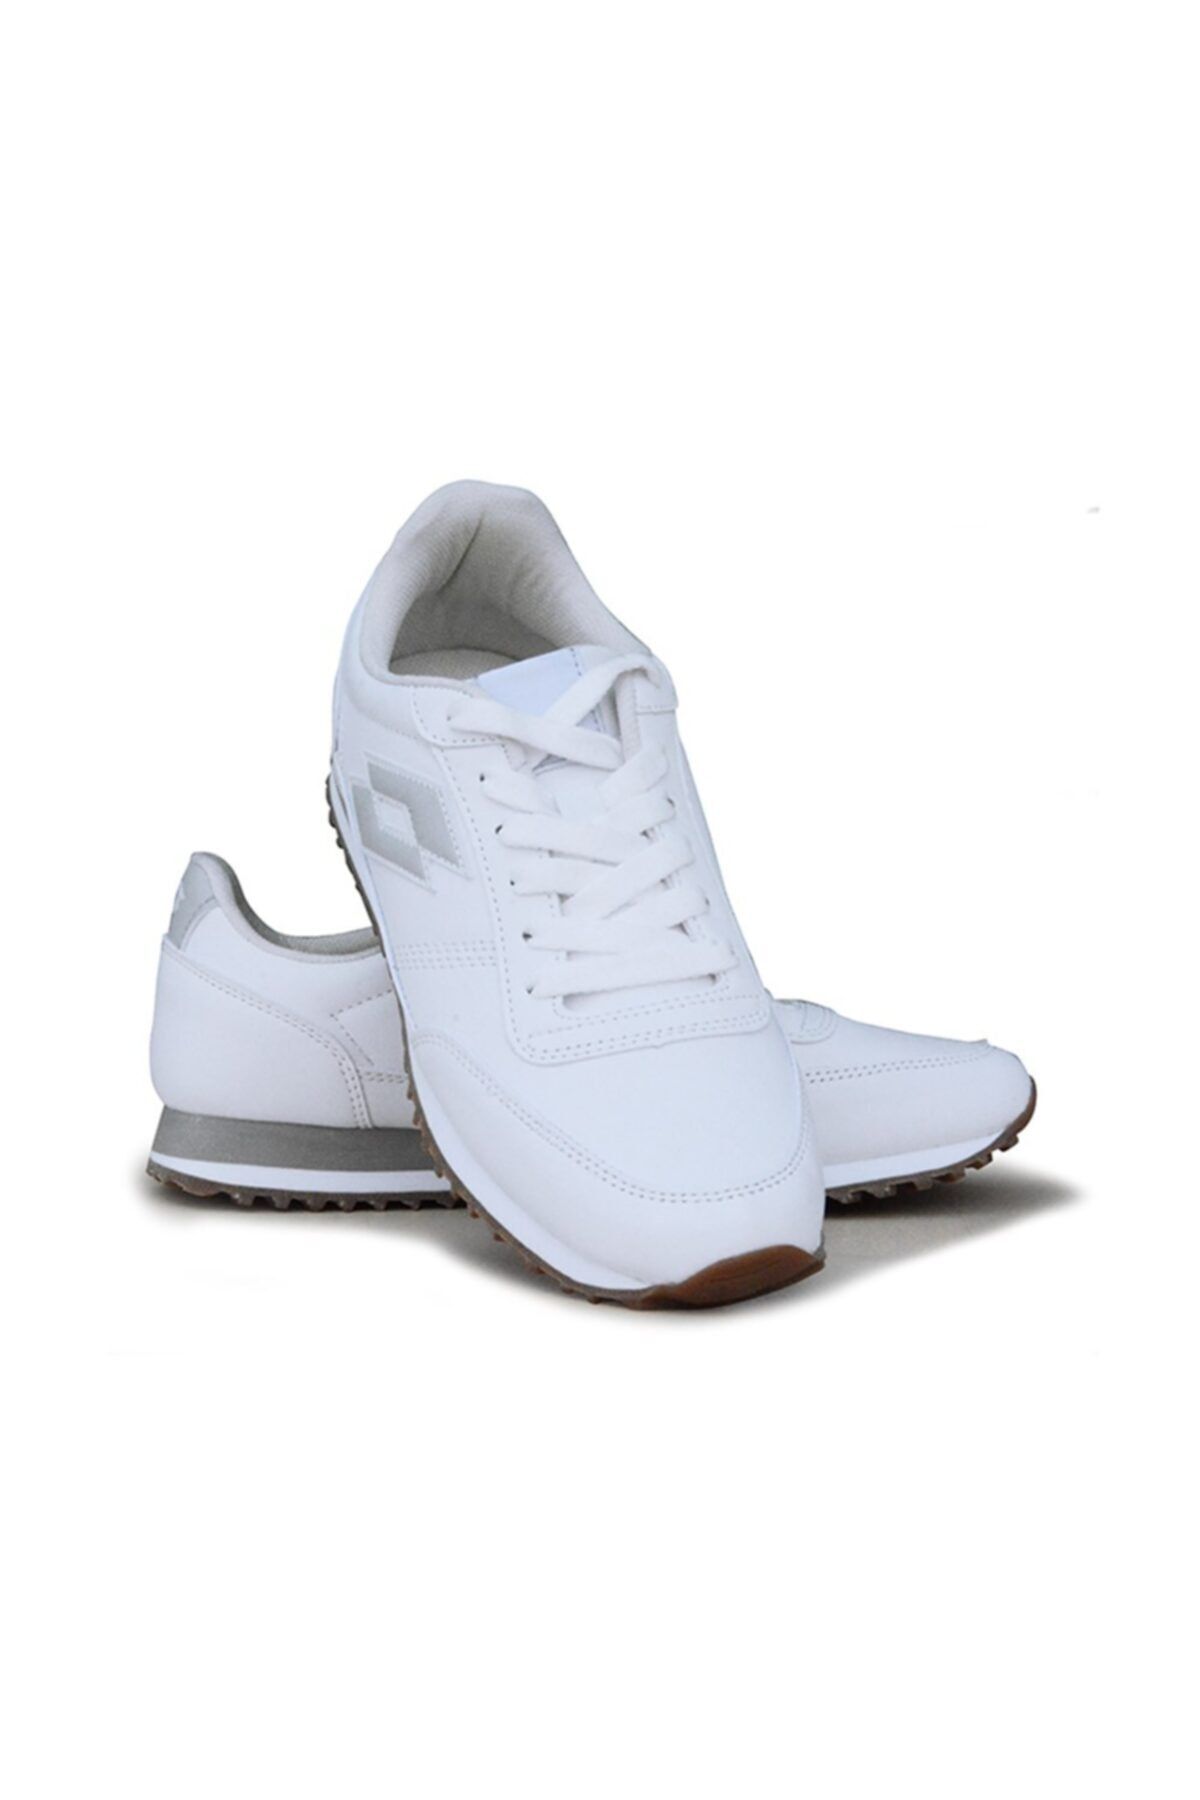 Lotto Unisex Beyaz Günlük Sneaker Ayakkabı